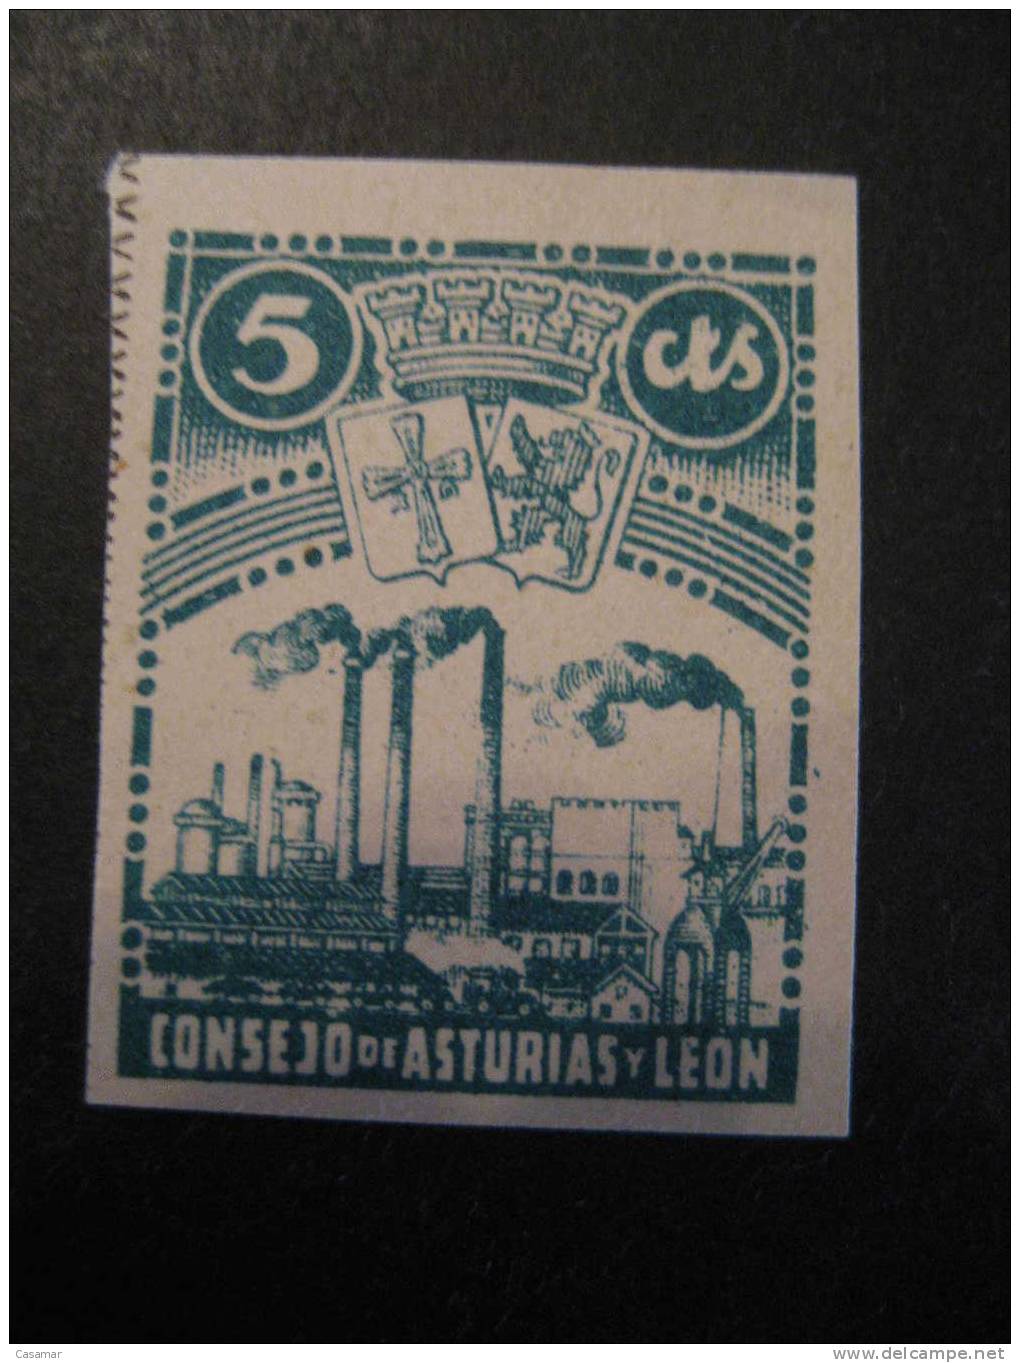 ASTURIAS Y LEON Consejo 5 Cts Escudo Arm Industria Industry Imperforated Poster Stamp Label Vignette Vi&ntilde;eta - Asturies & Leon